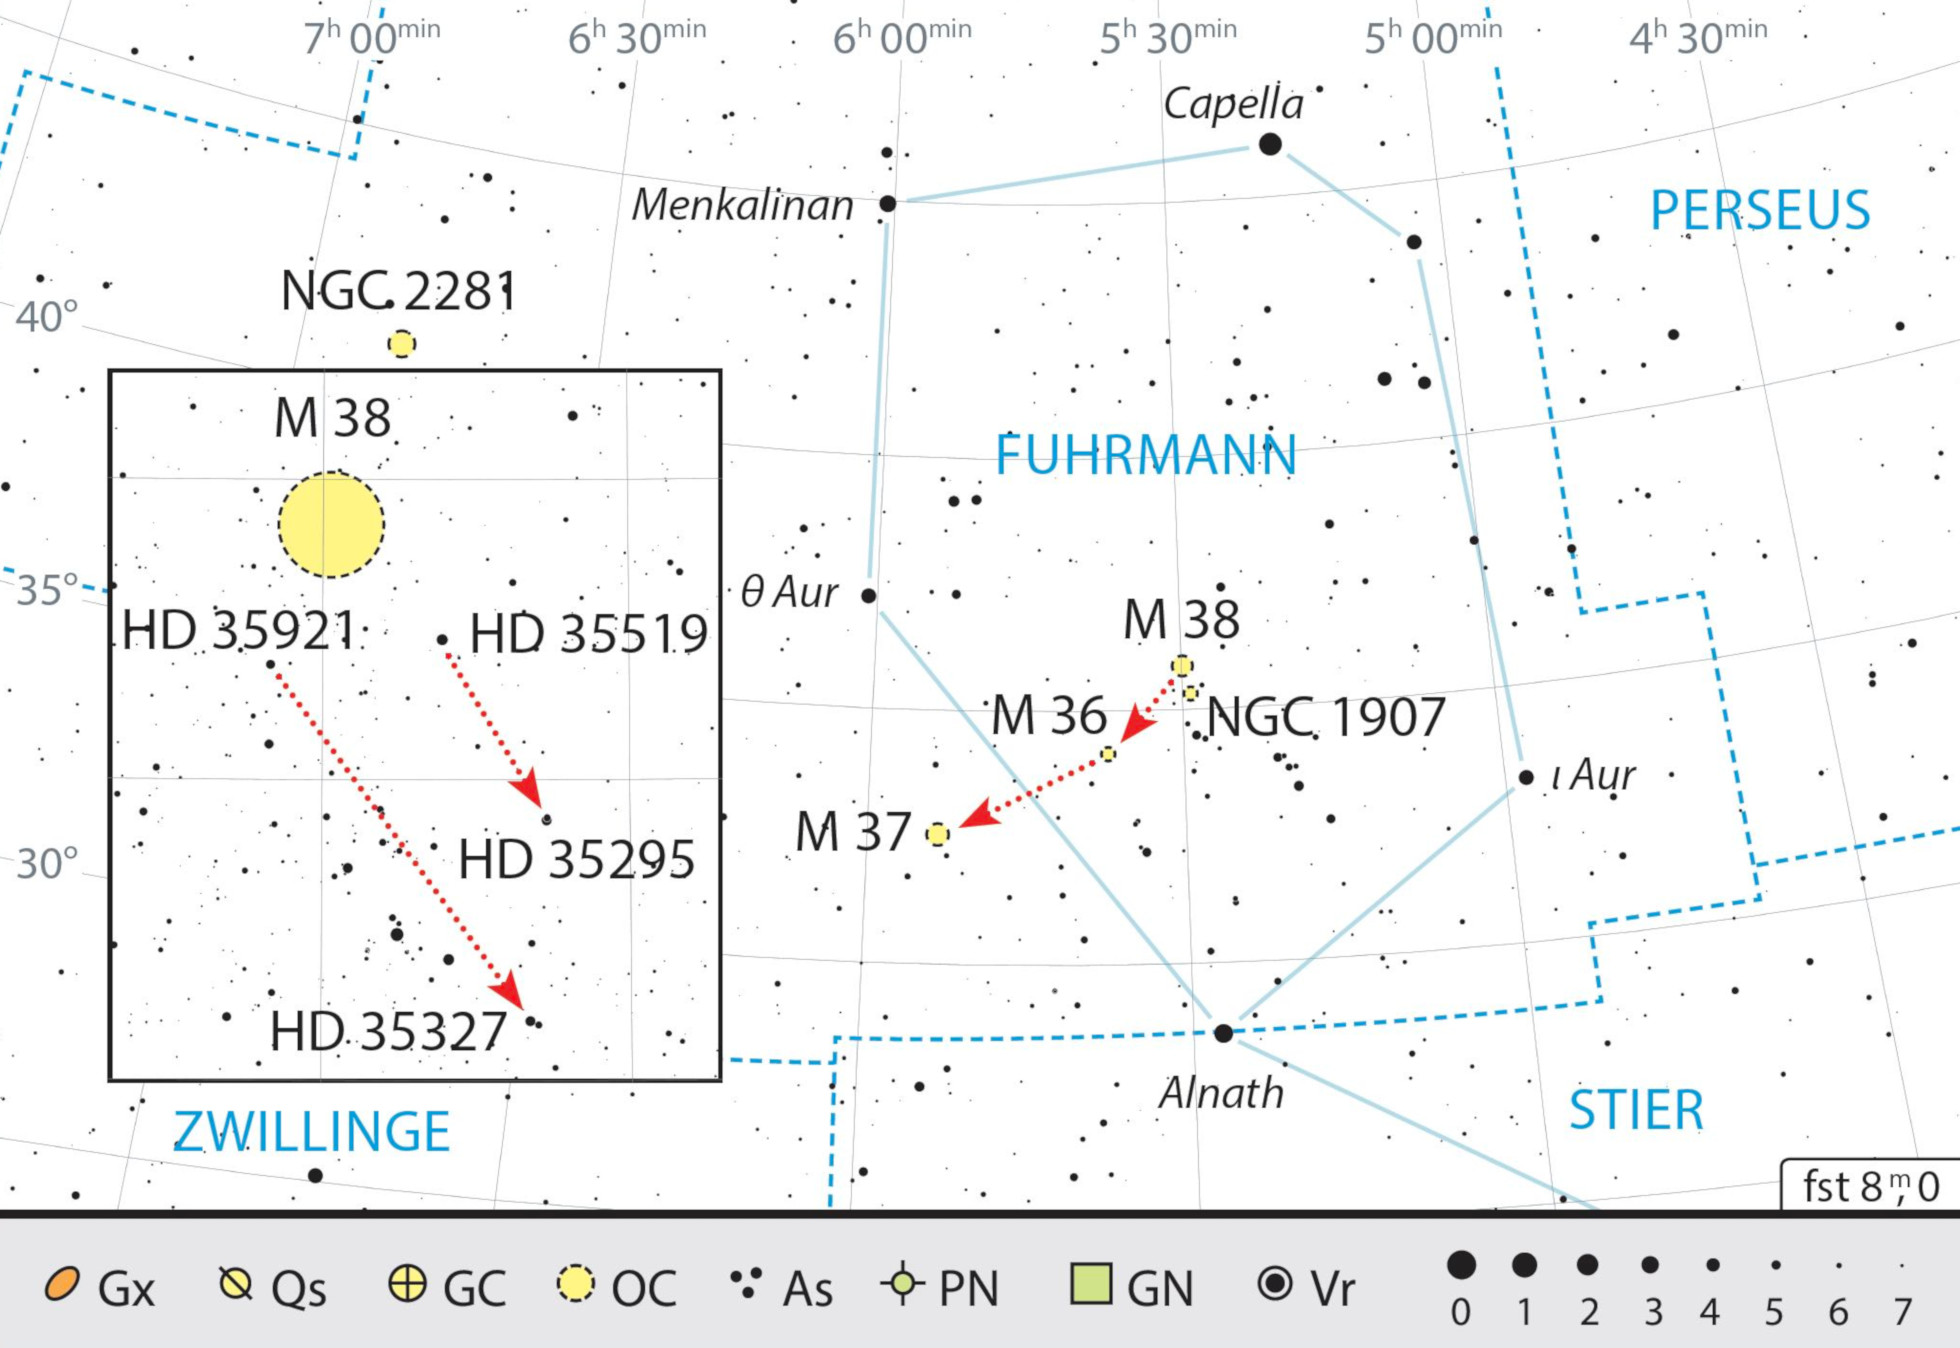 Mappa celeste per la costellazione di Auriga con gli oggetti consigliati. J. Scholten